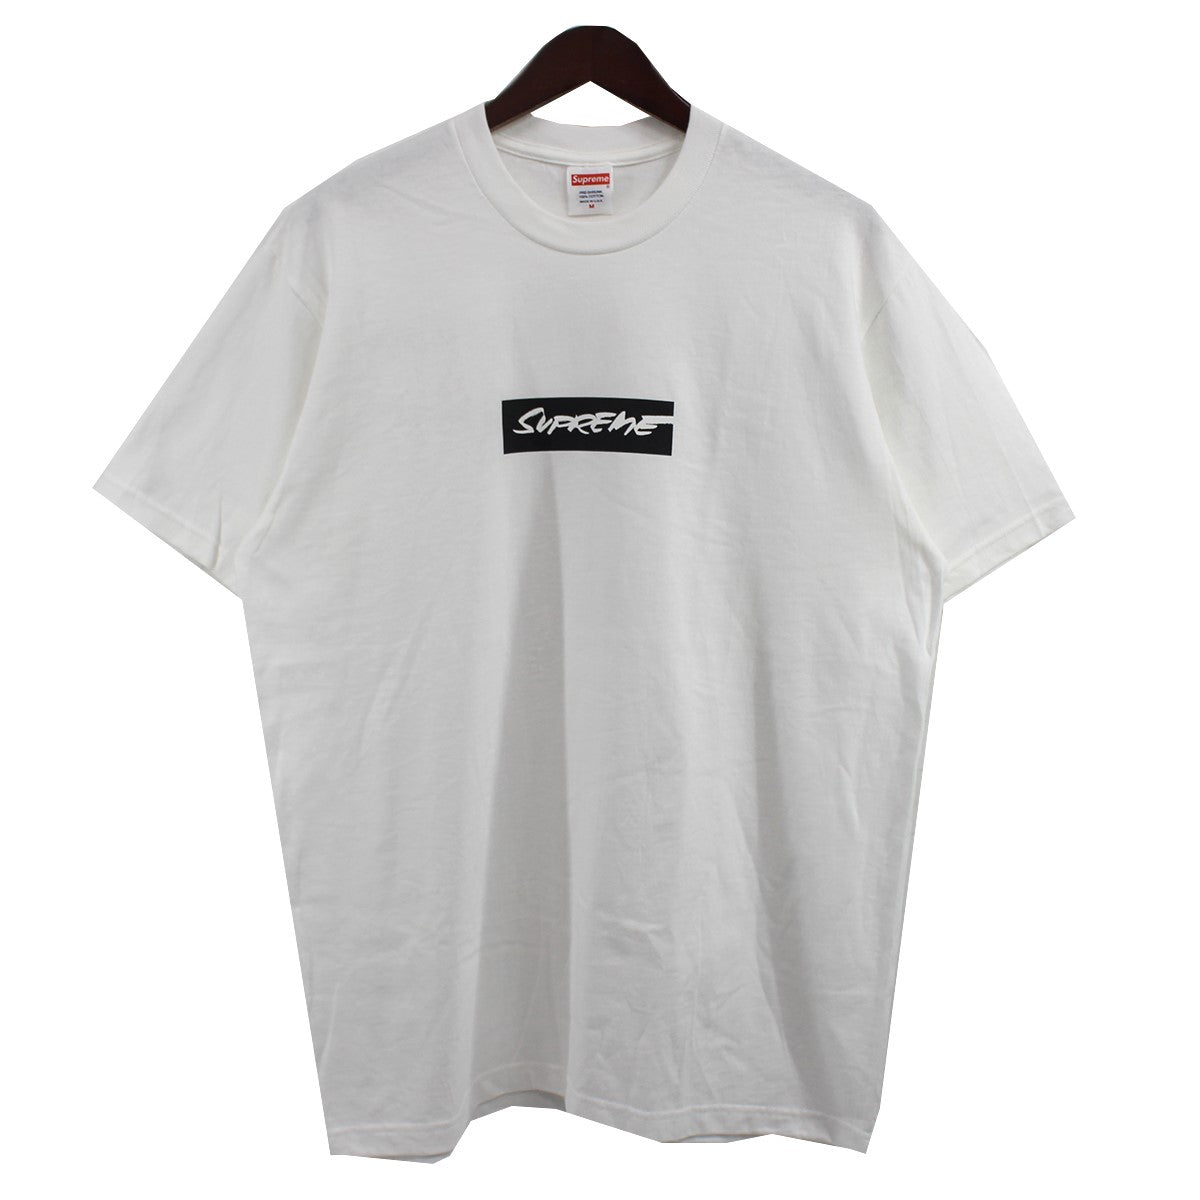 オンライン購入品ですsupreme Box logo tシャツ　futura Mサイズ